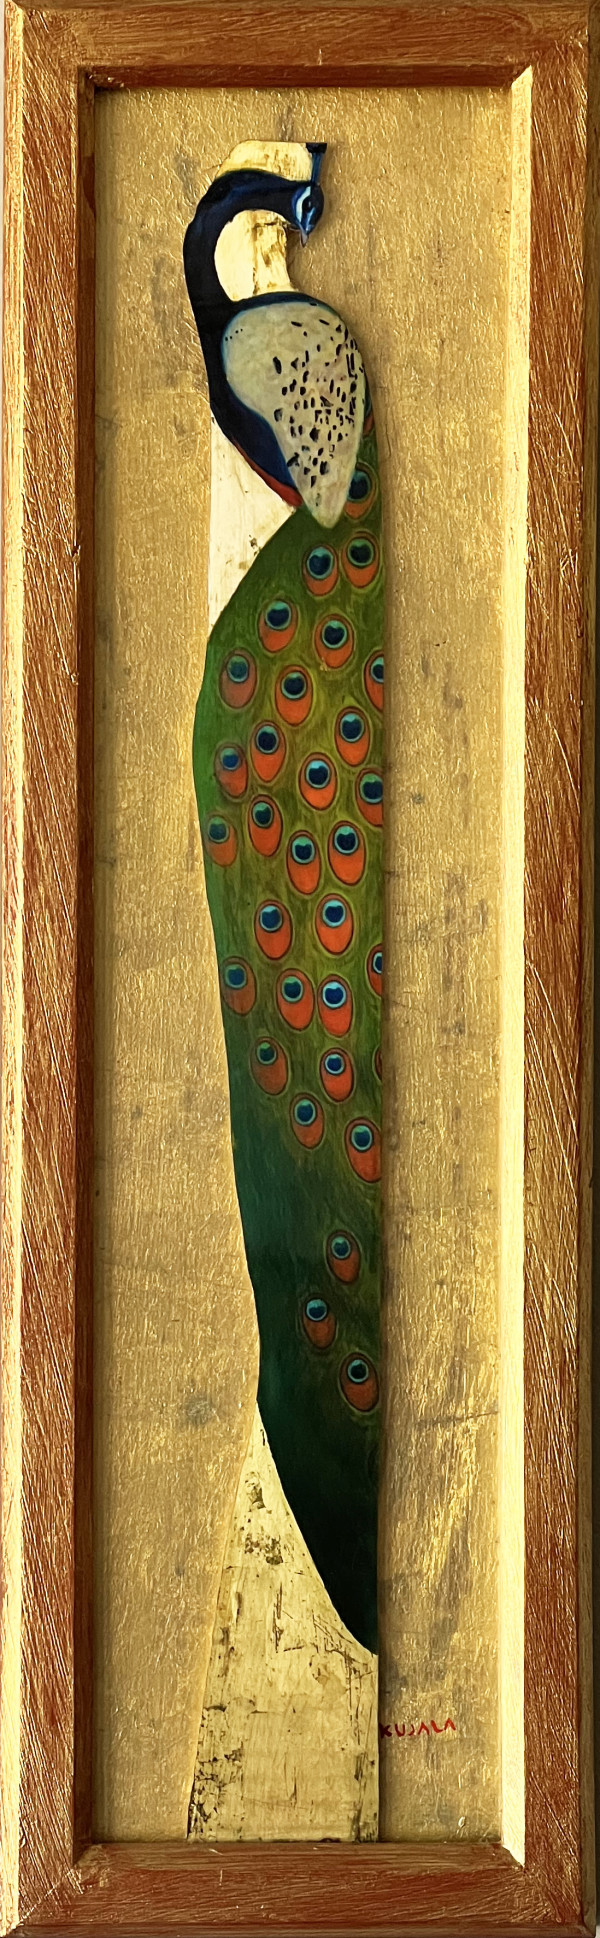 Peacock #1 by Laila Kujala